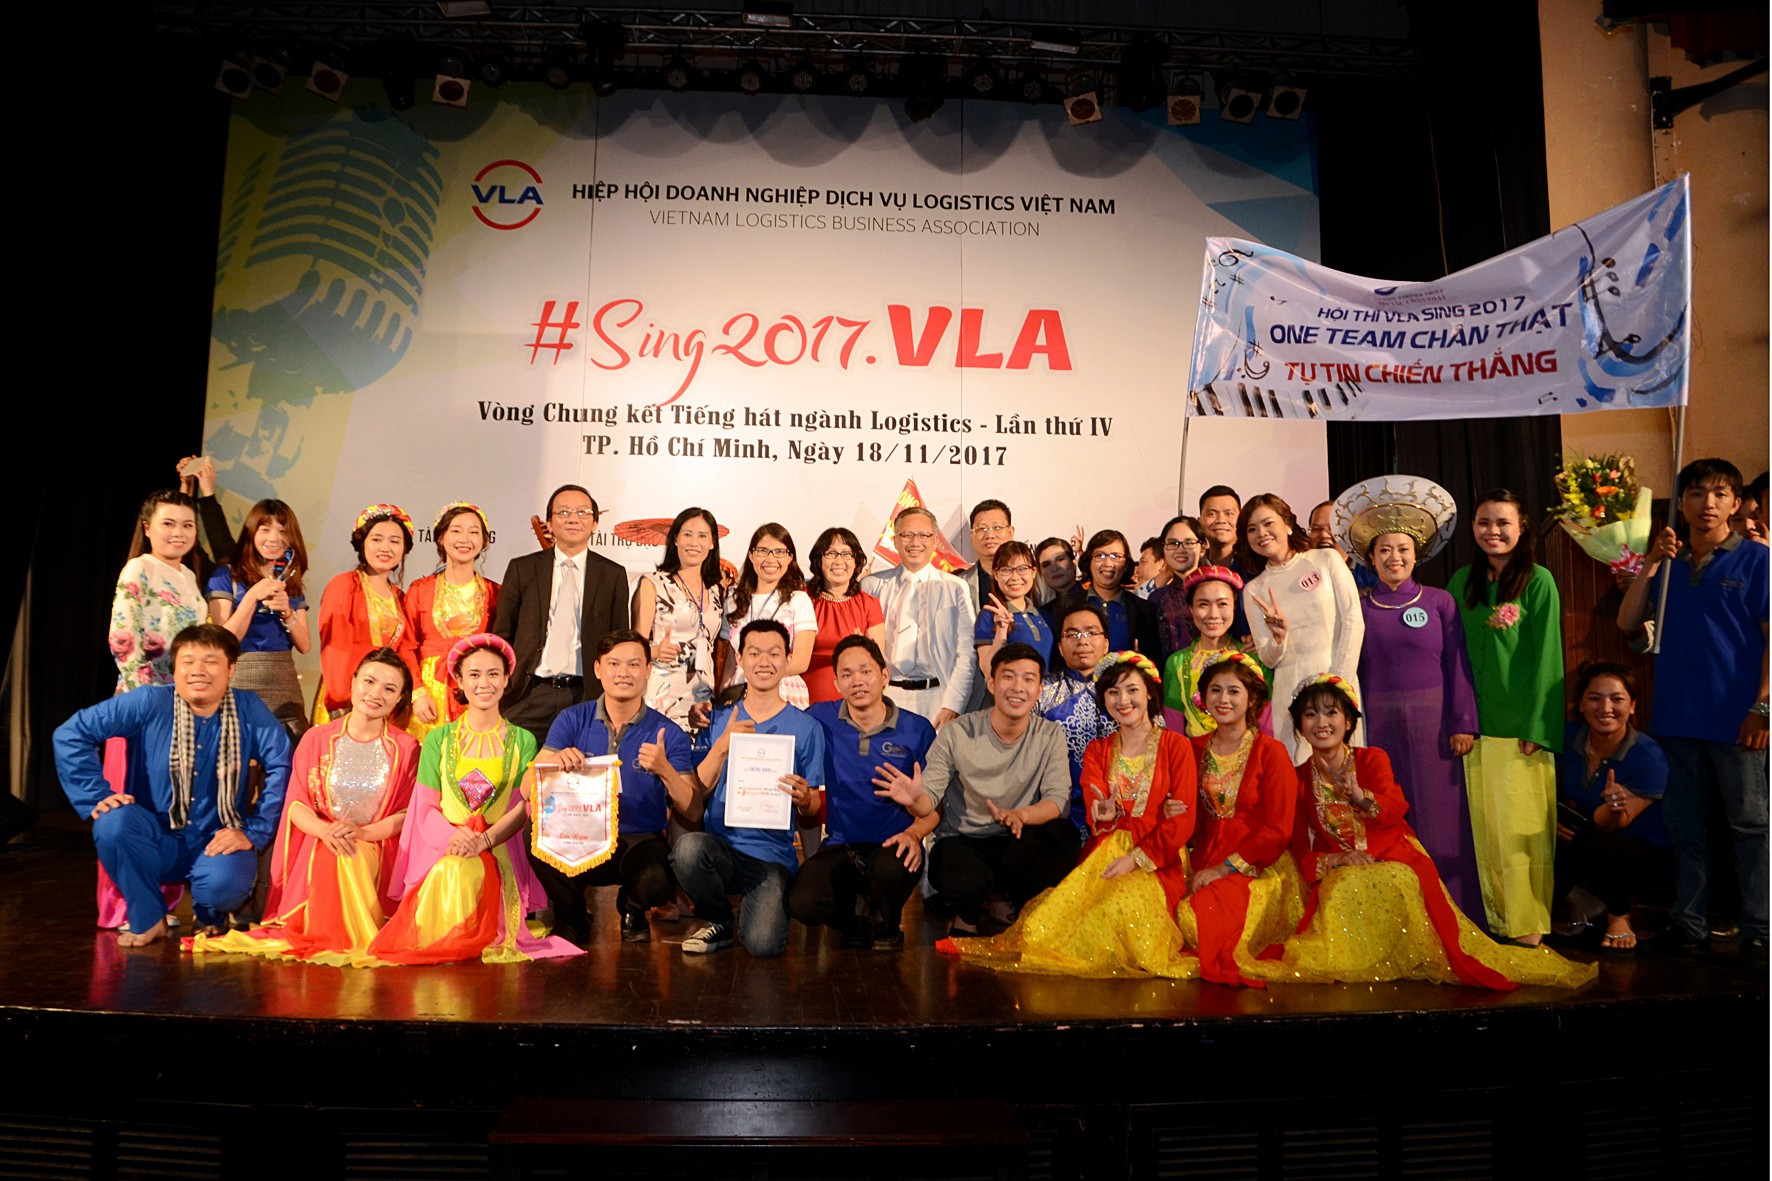 Hiệp hội tổ chức Hội thi Tiếng hát Logistics VLA lần thứ IV năm 2017 